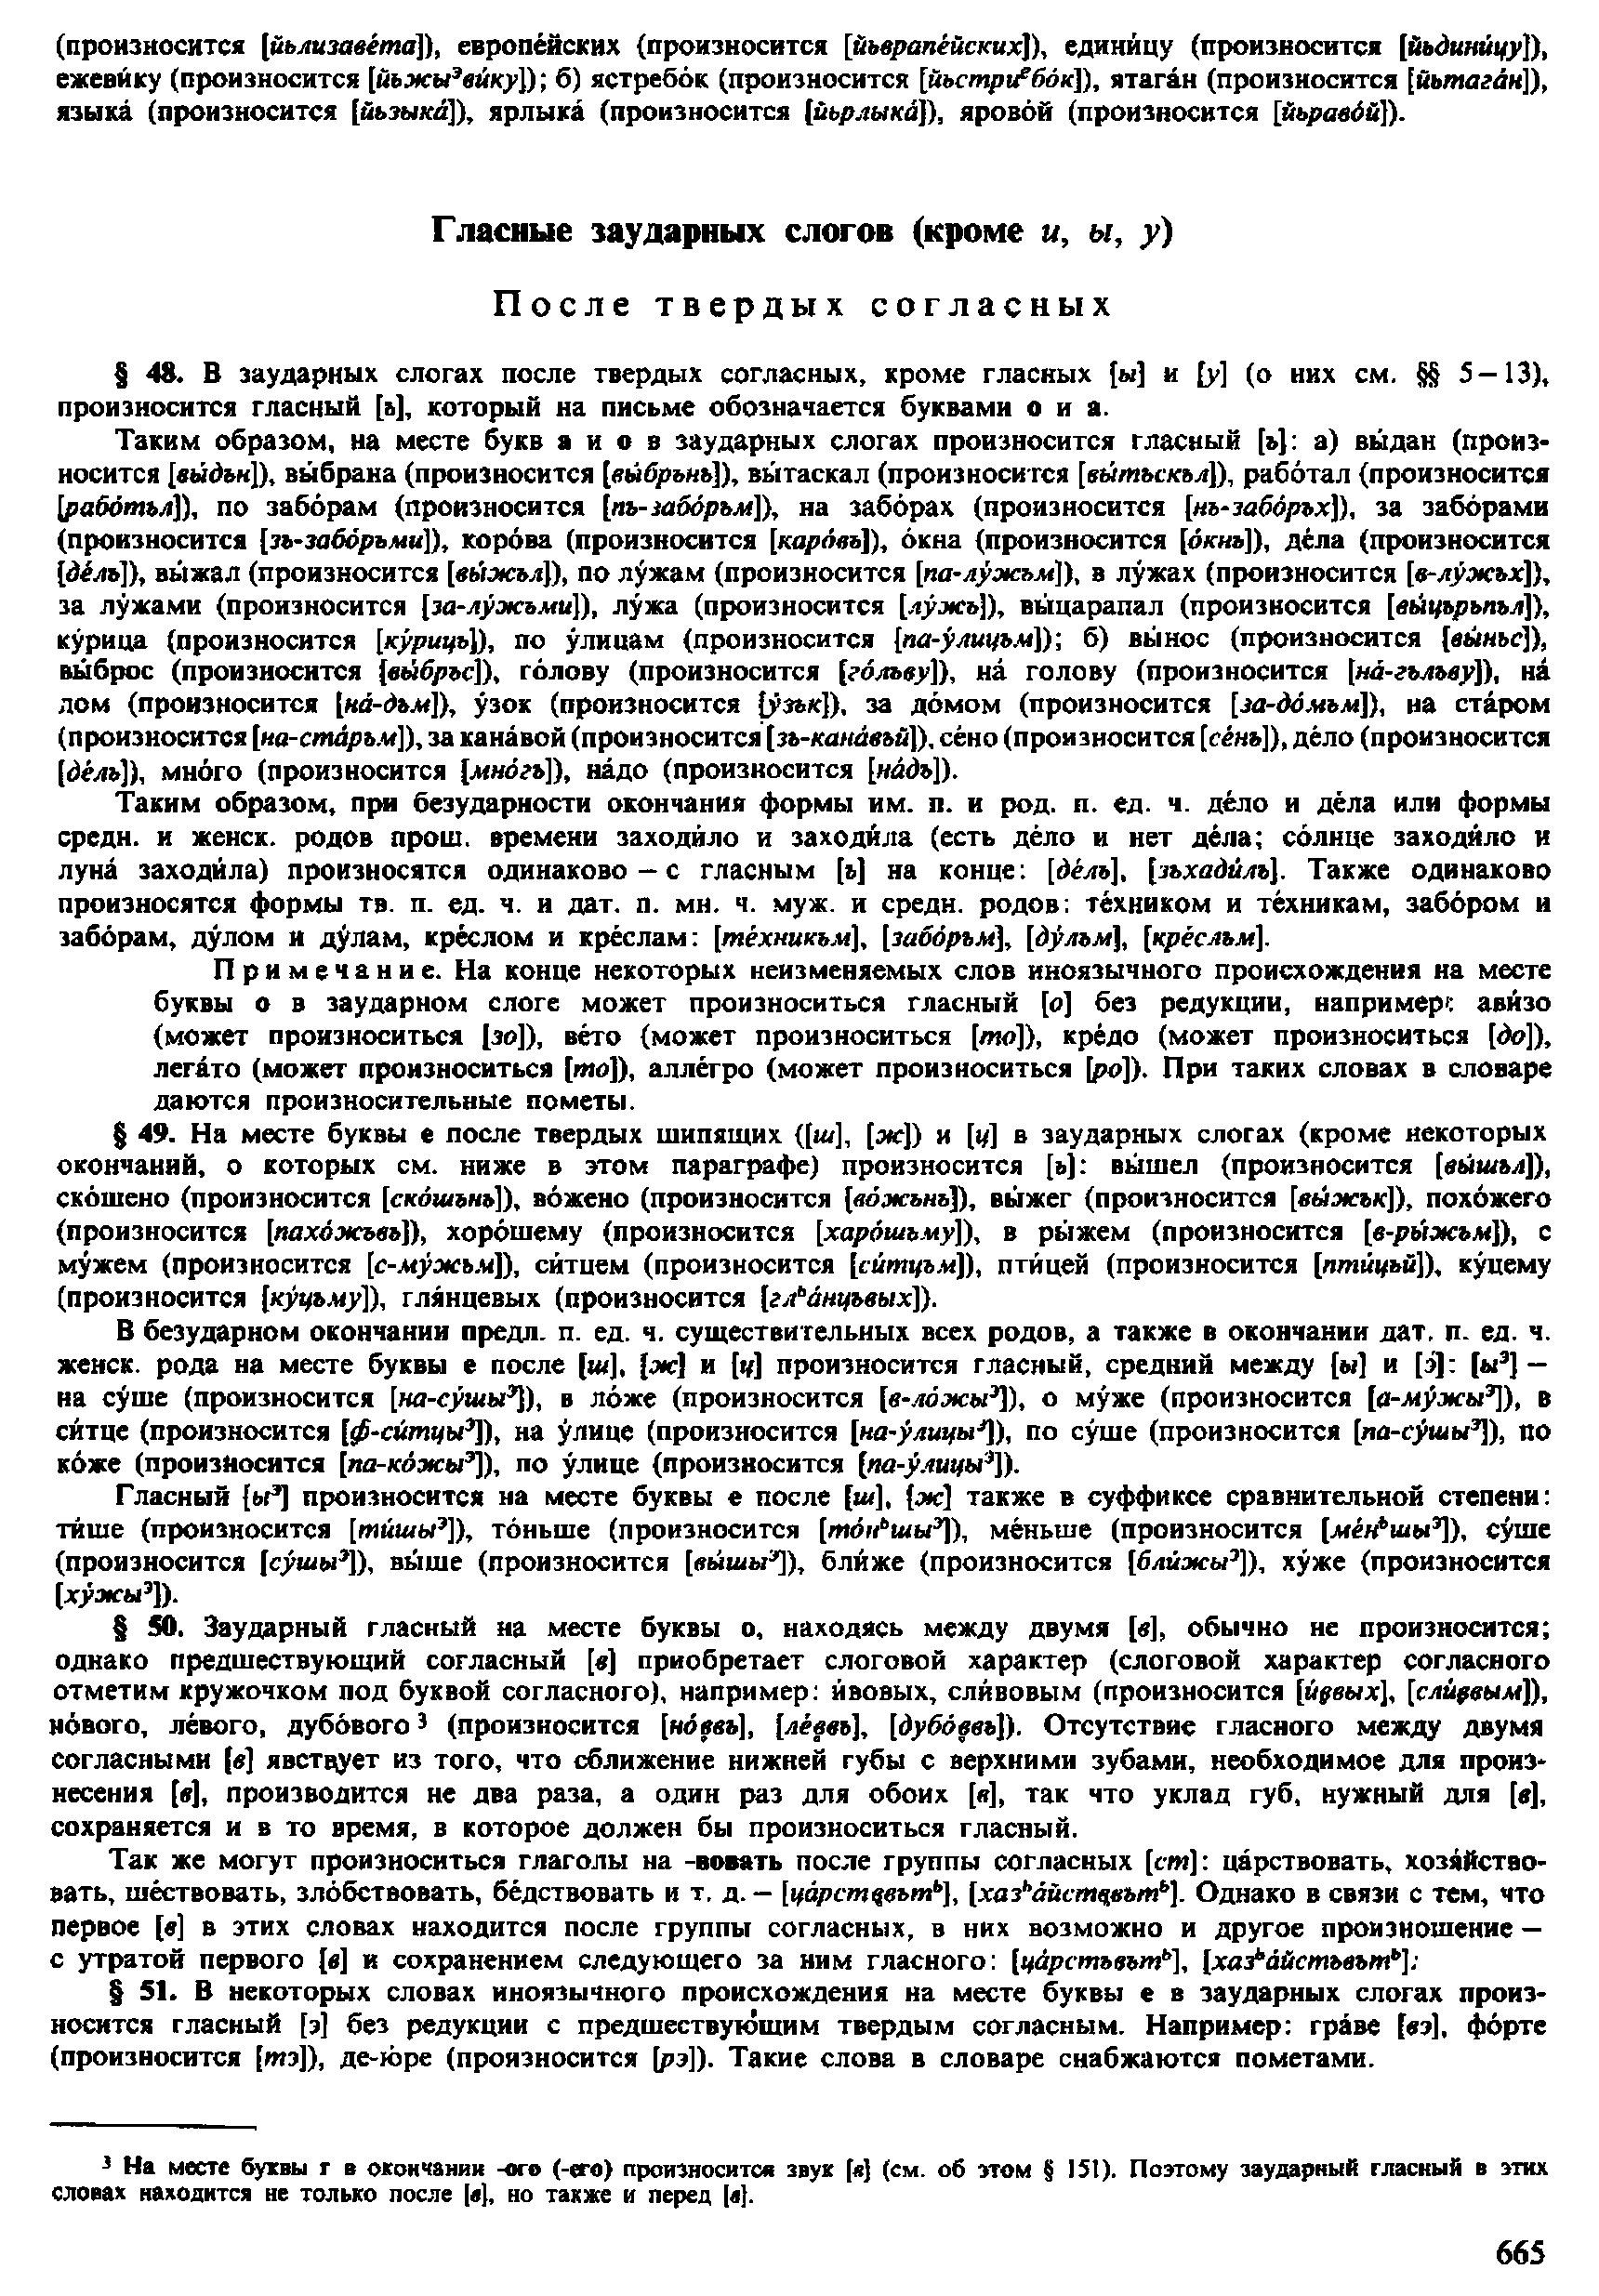 Фотокопия pdf / скан страницы 663 орфоэпического словаря под редакцией Аванесова (4 издание, 1988 год)